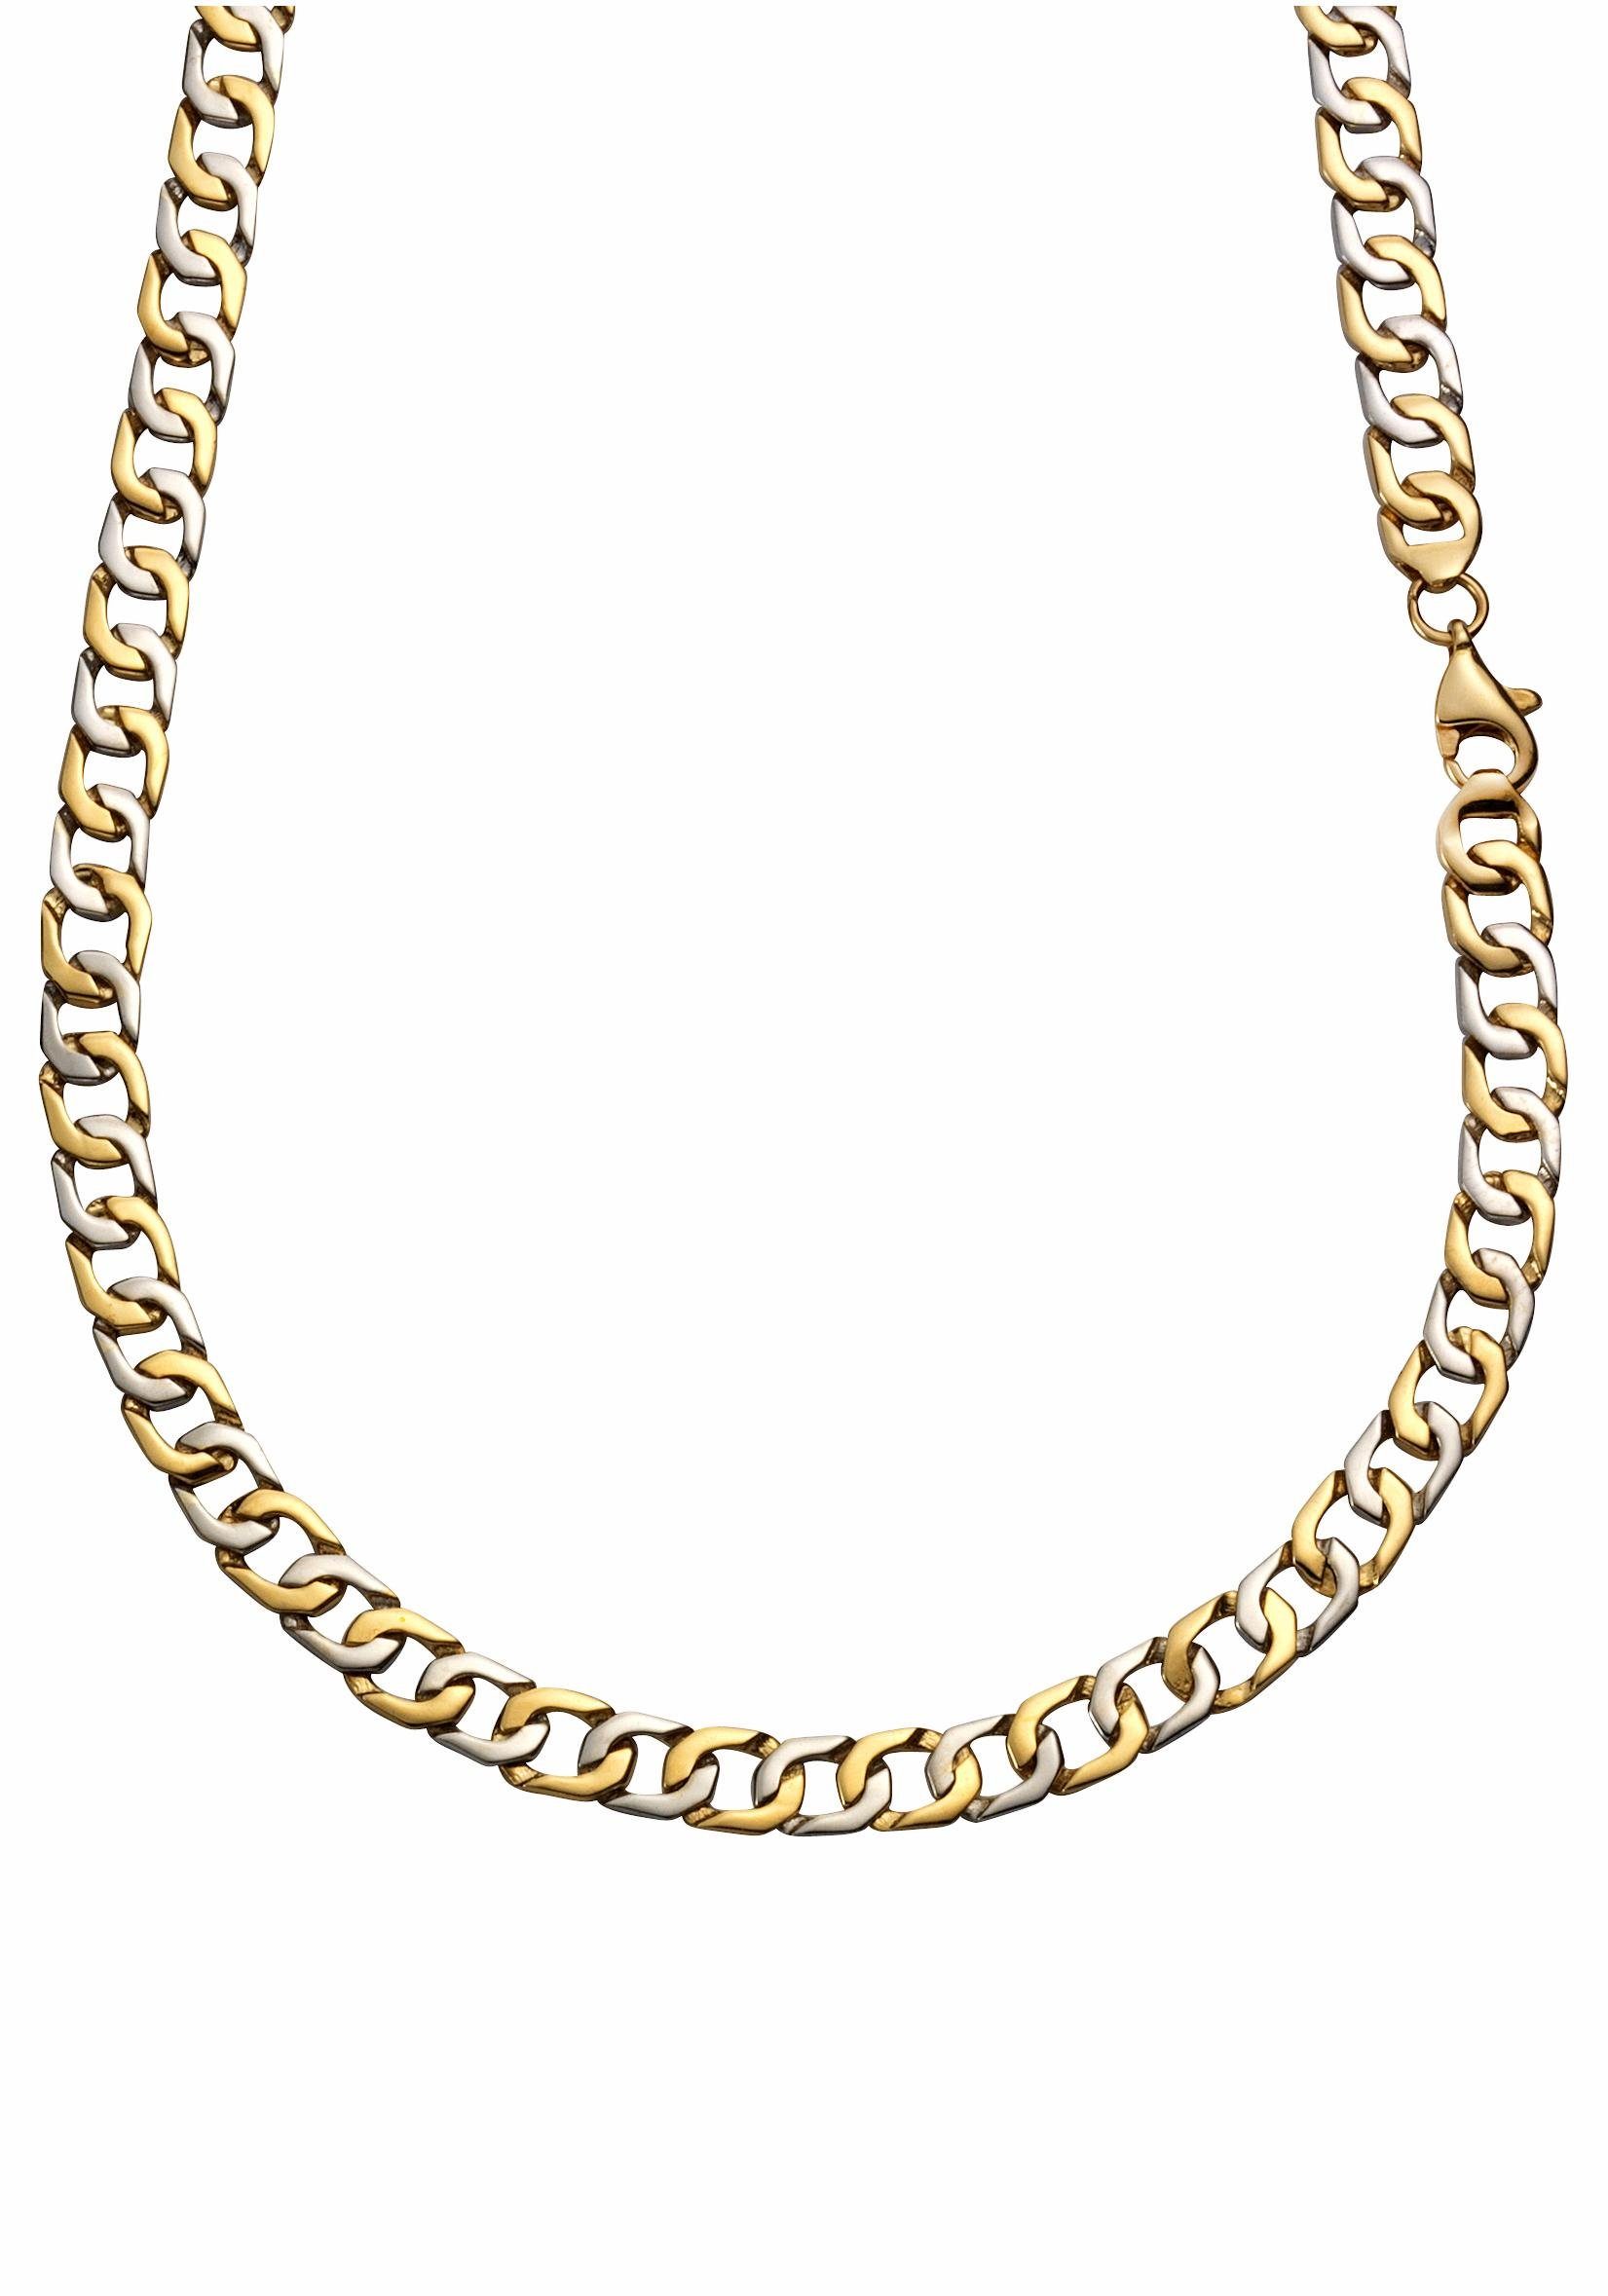 Firetti Goldkette Schmuck Geschenk Gold 375 Halsschmuck Halskette Goldkette Panzerkette, zu Hoodie, Kleid, Shirt, Jeans, Sneaker! Anlass Geburtstag Weihnachten